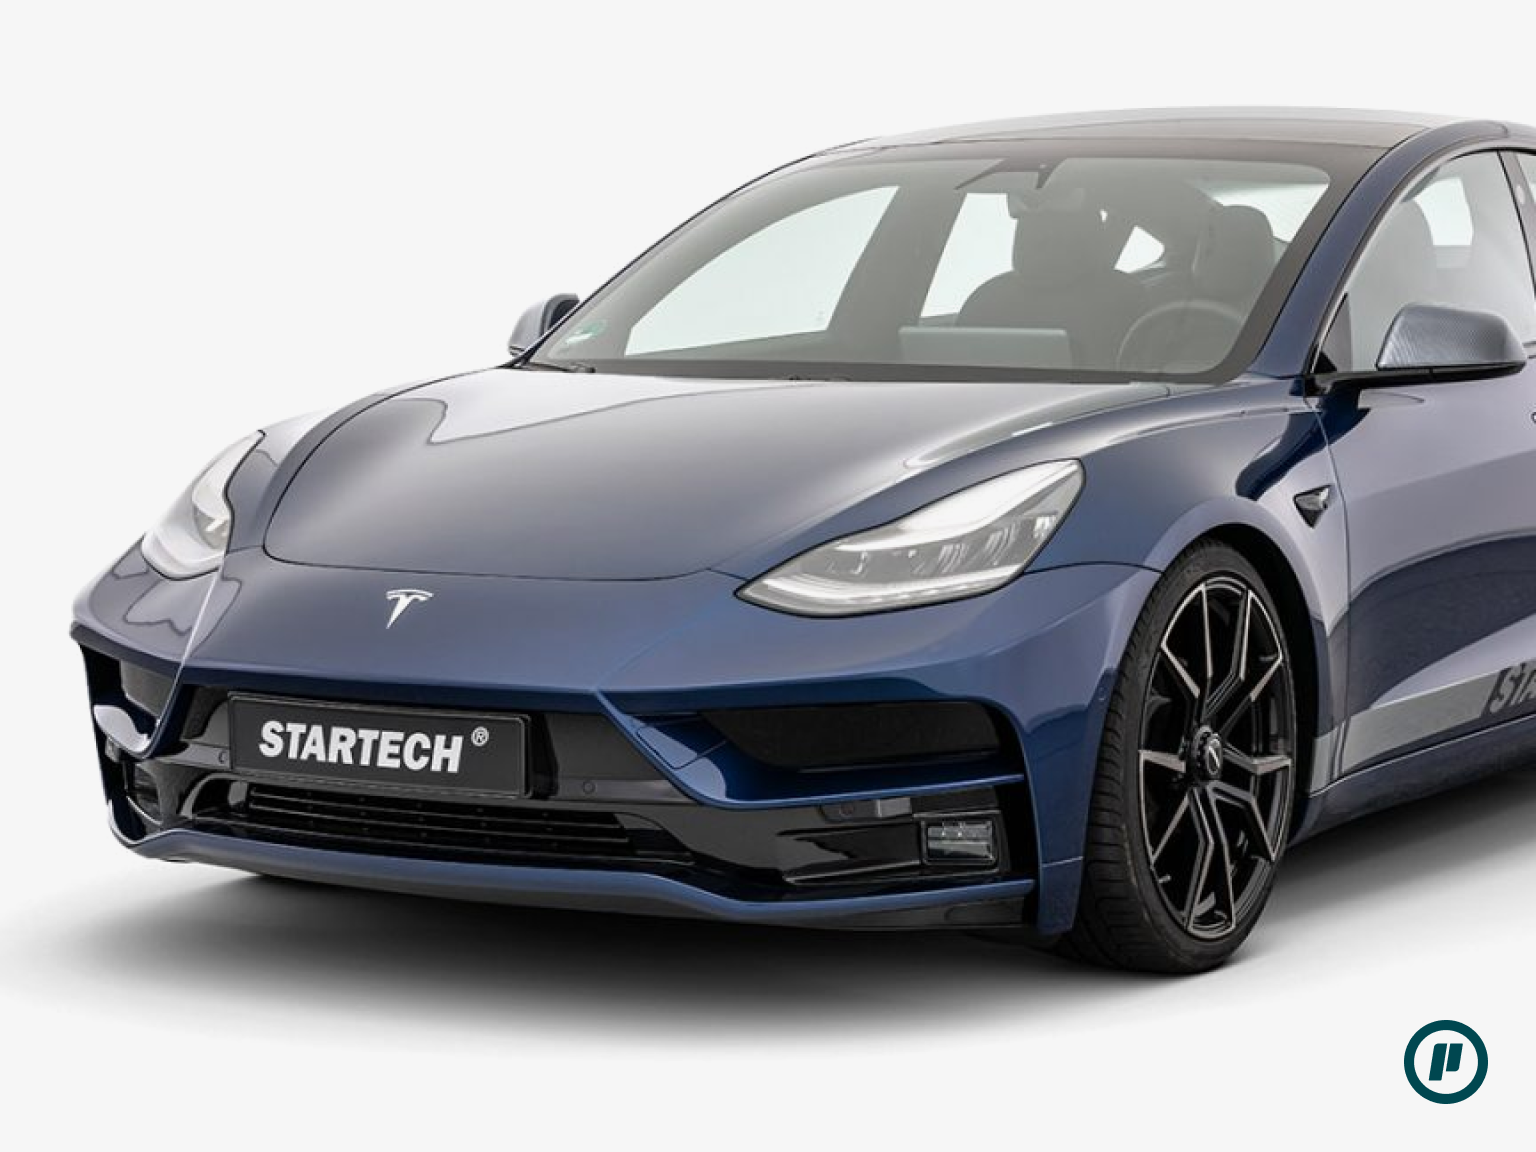 Startech Frontstoßstange für Tesla Model 3 (2017+)